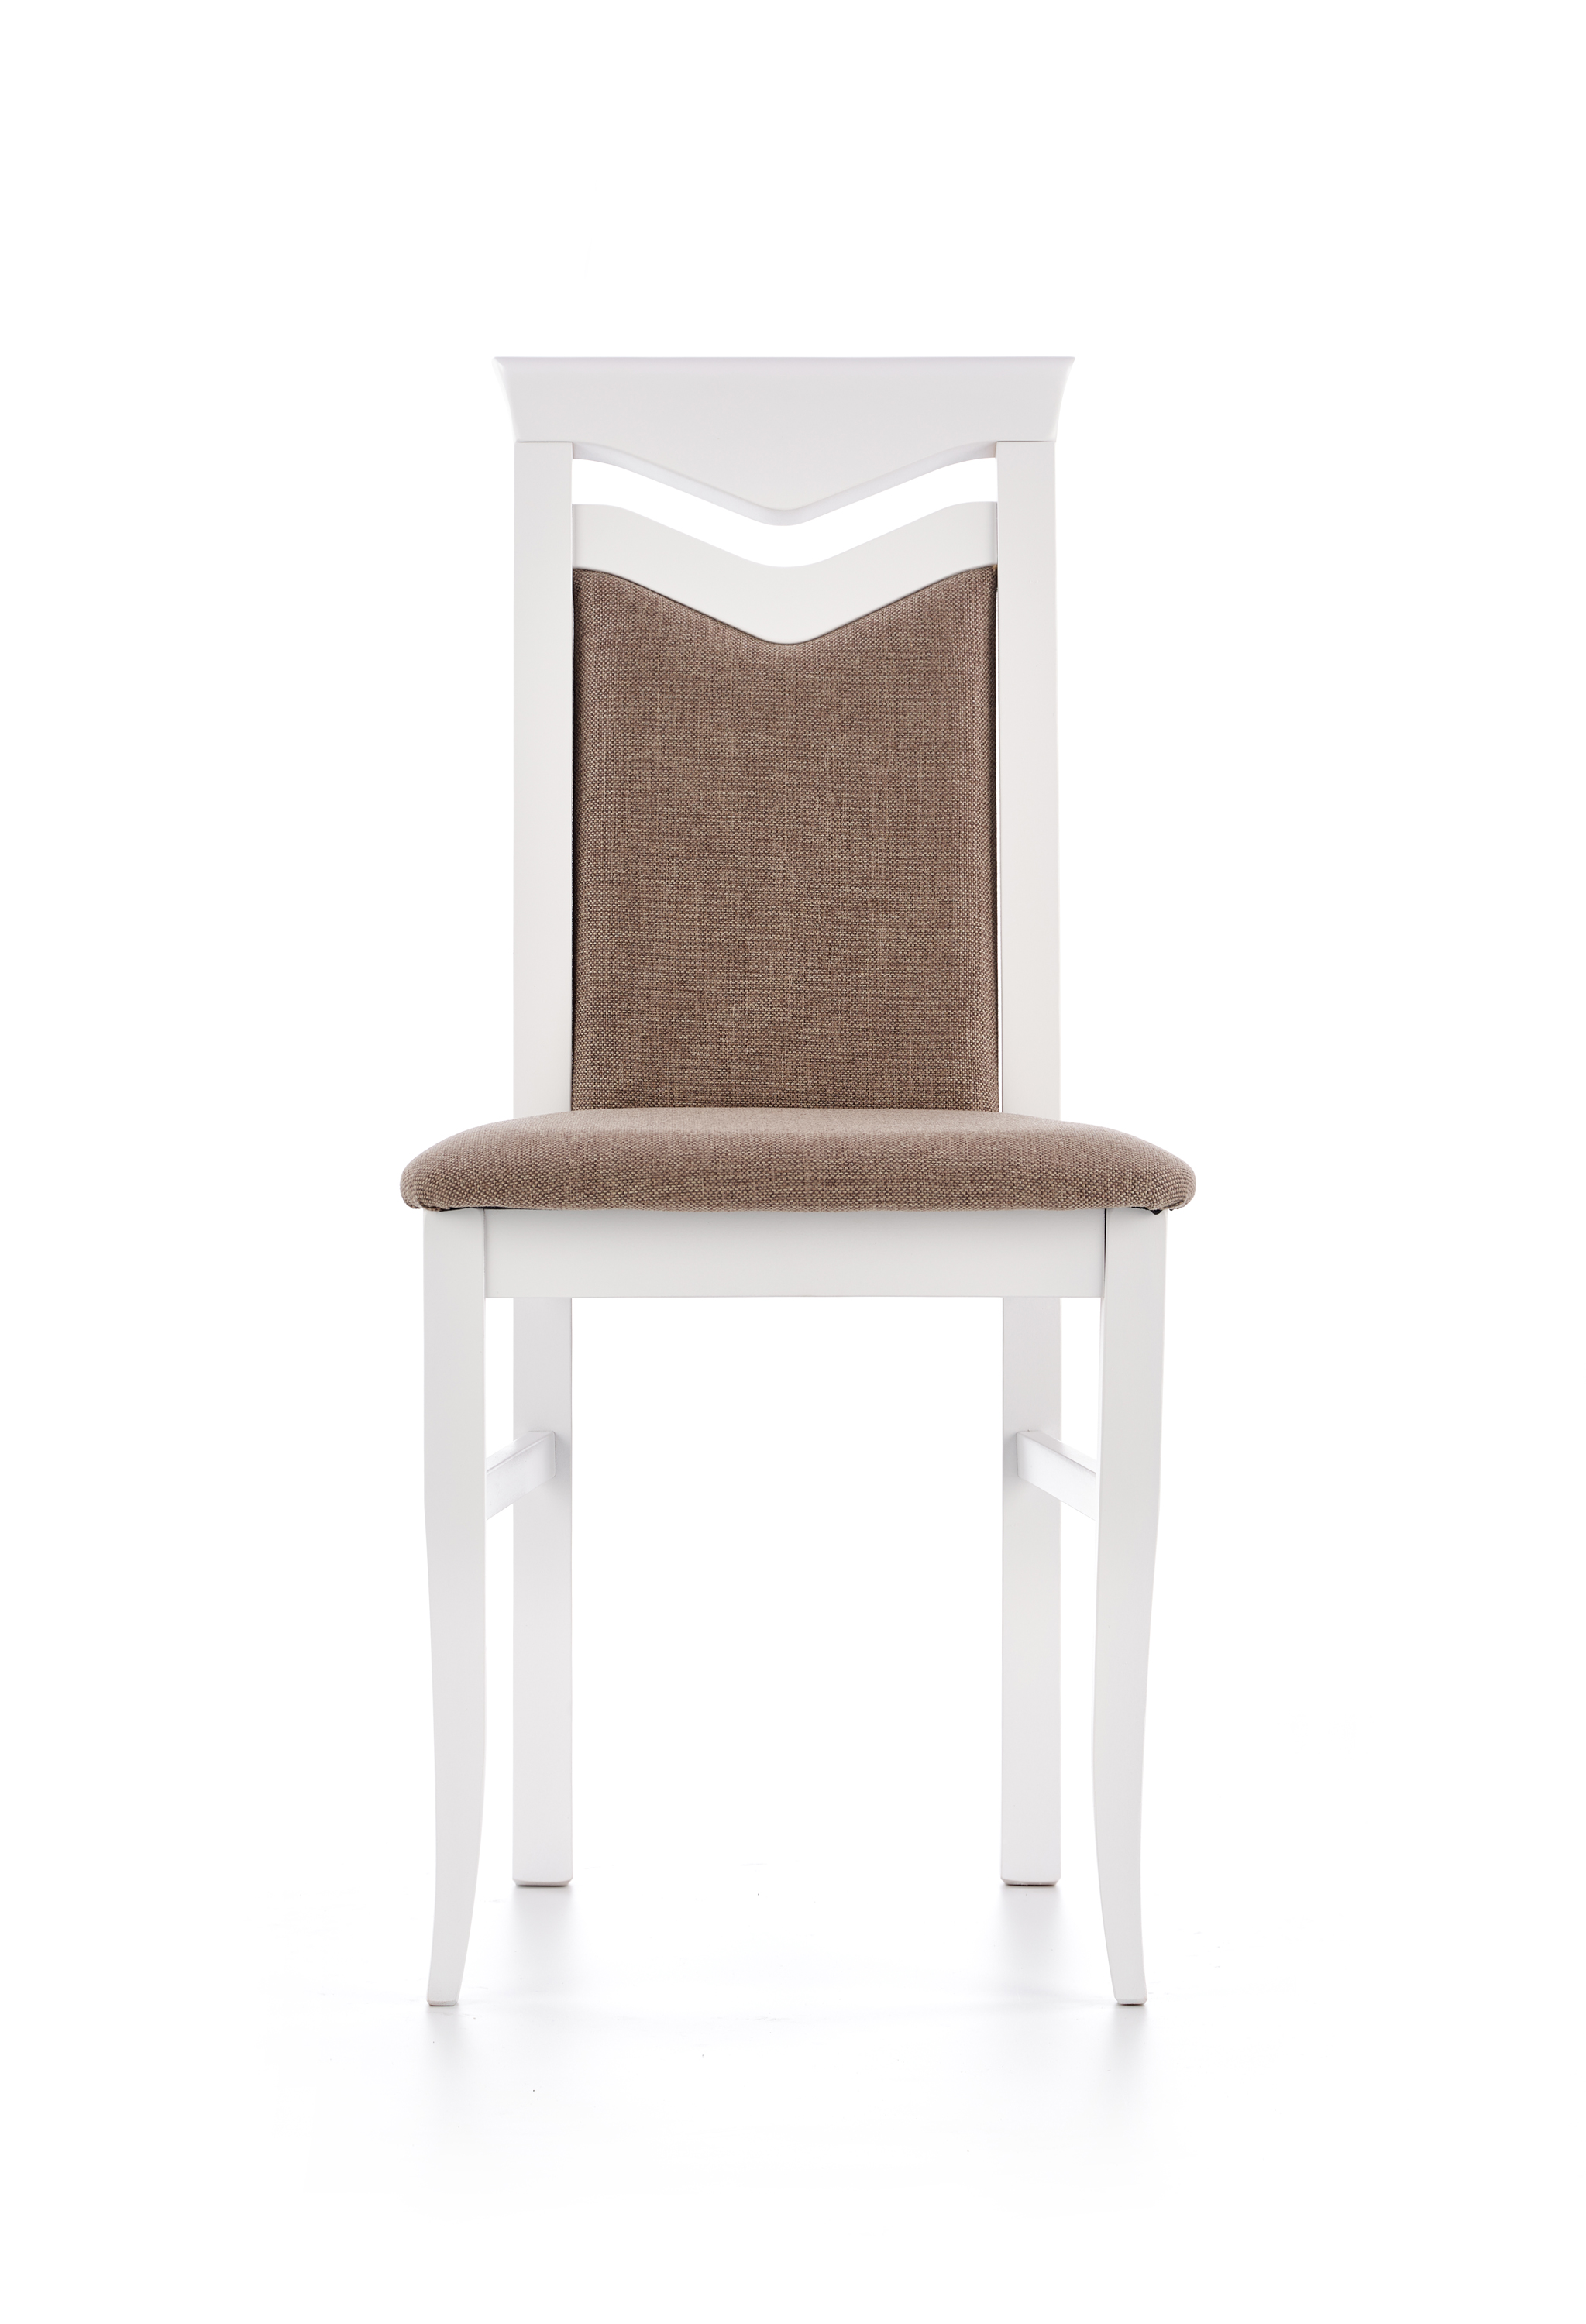 CITRONE szék - fehér / kárpitozott: INARI 23 citrone Židle Bílý / tap: inari 23